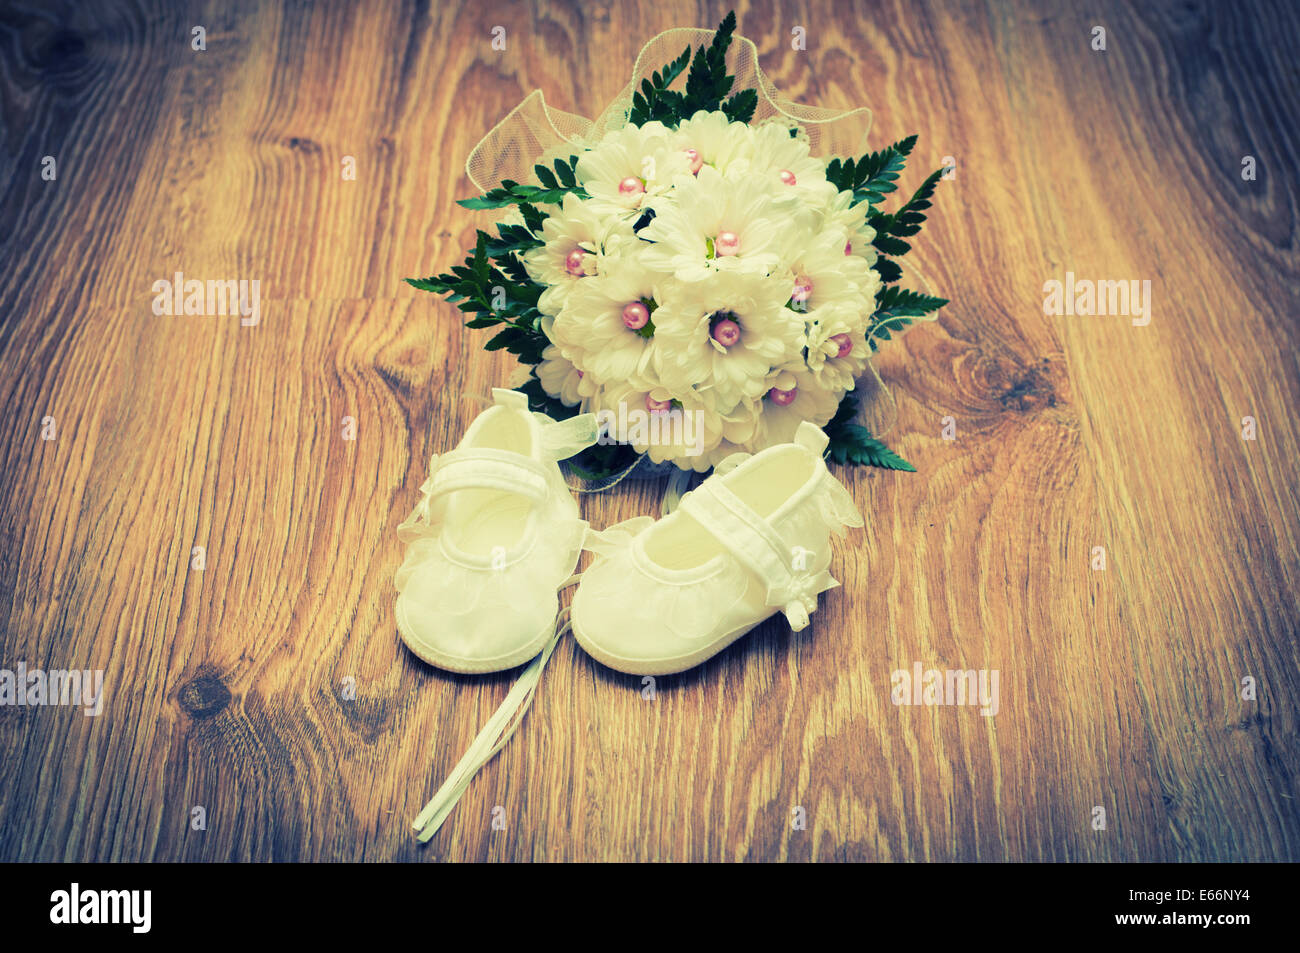 Weiße Schuhe und weiße Bouquet auf einem Holzfußboden Stockfoto